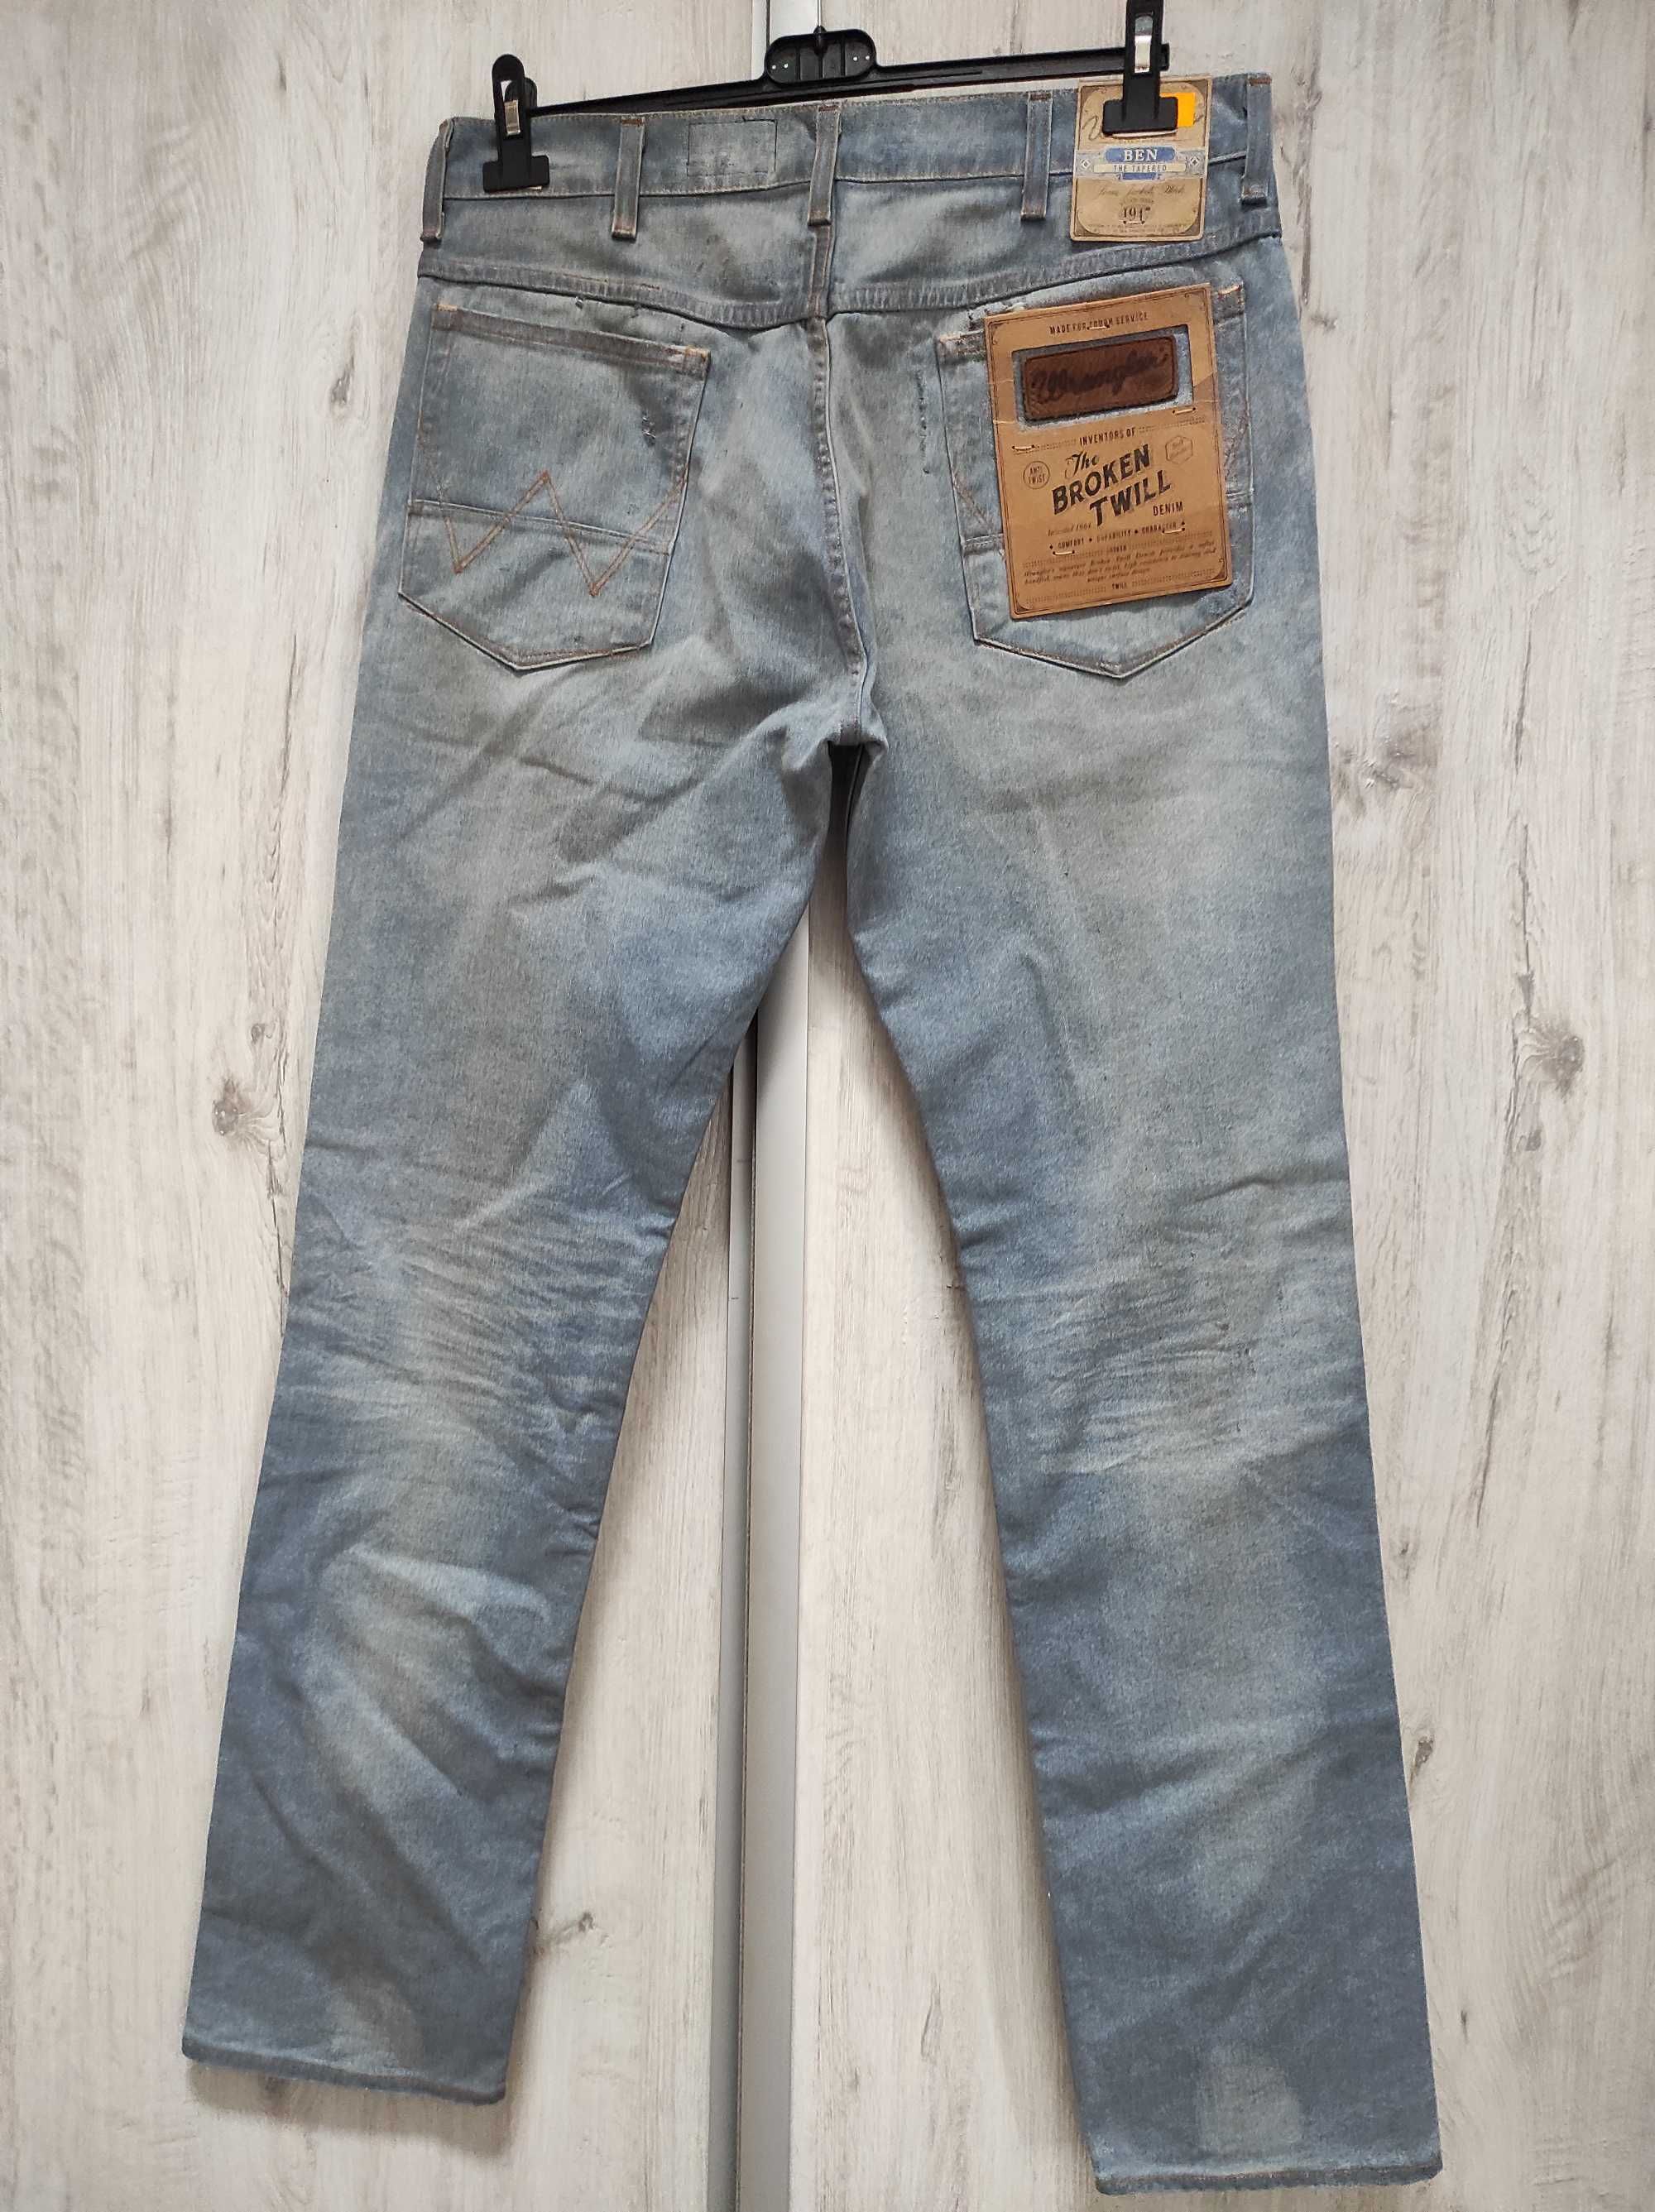 Spodnie Męskie Dżinsowe Jeansowe WRANGLER BEN Rozmiar W32 L34